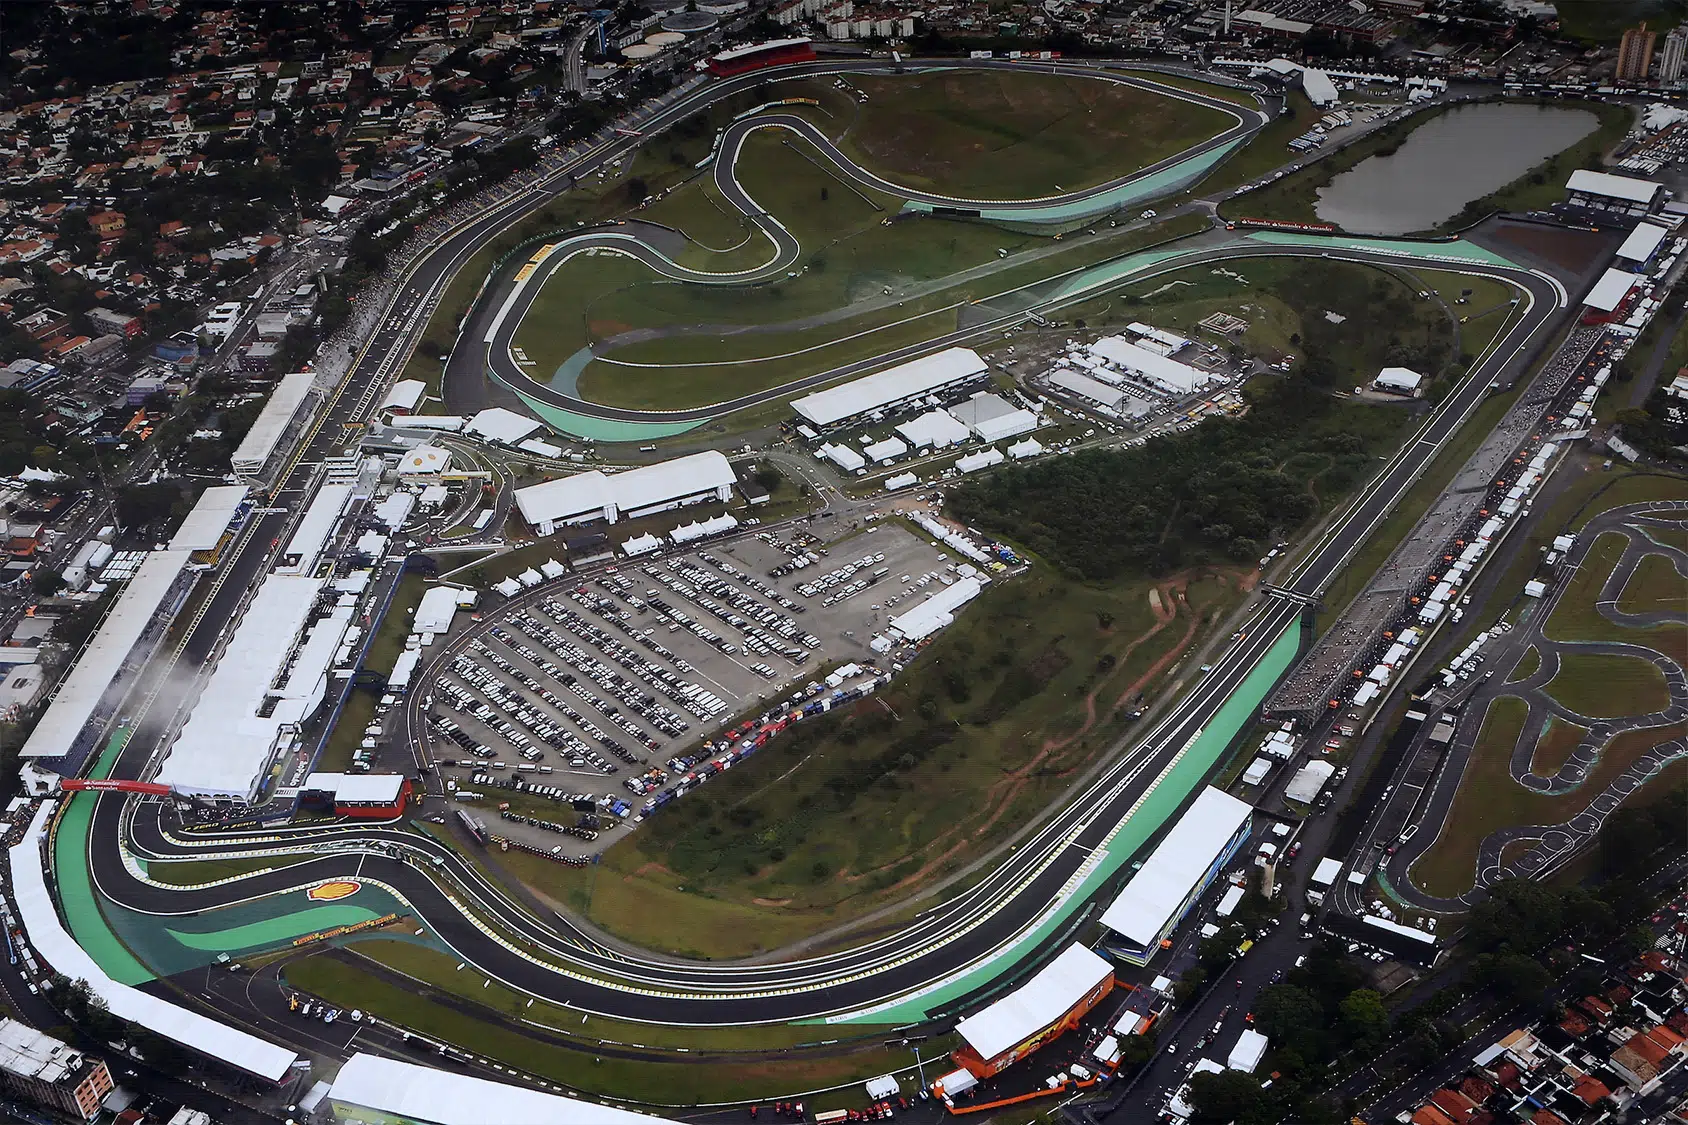 Aerial view of Interlagos circuit